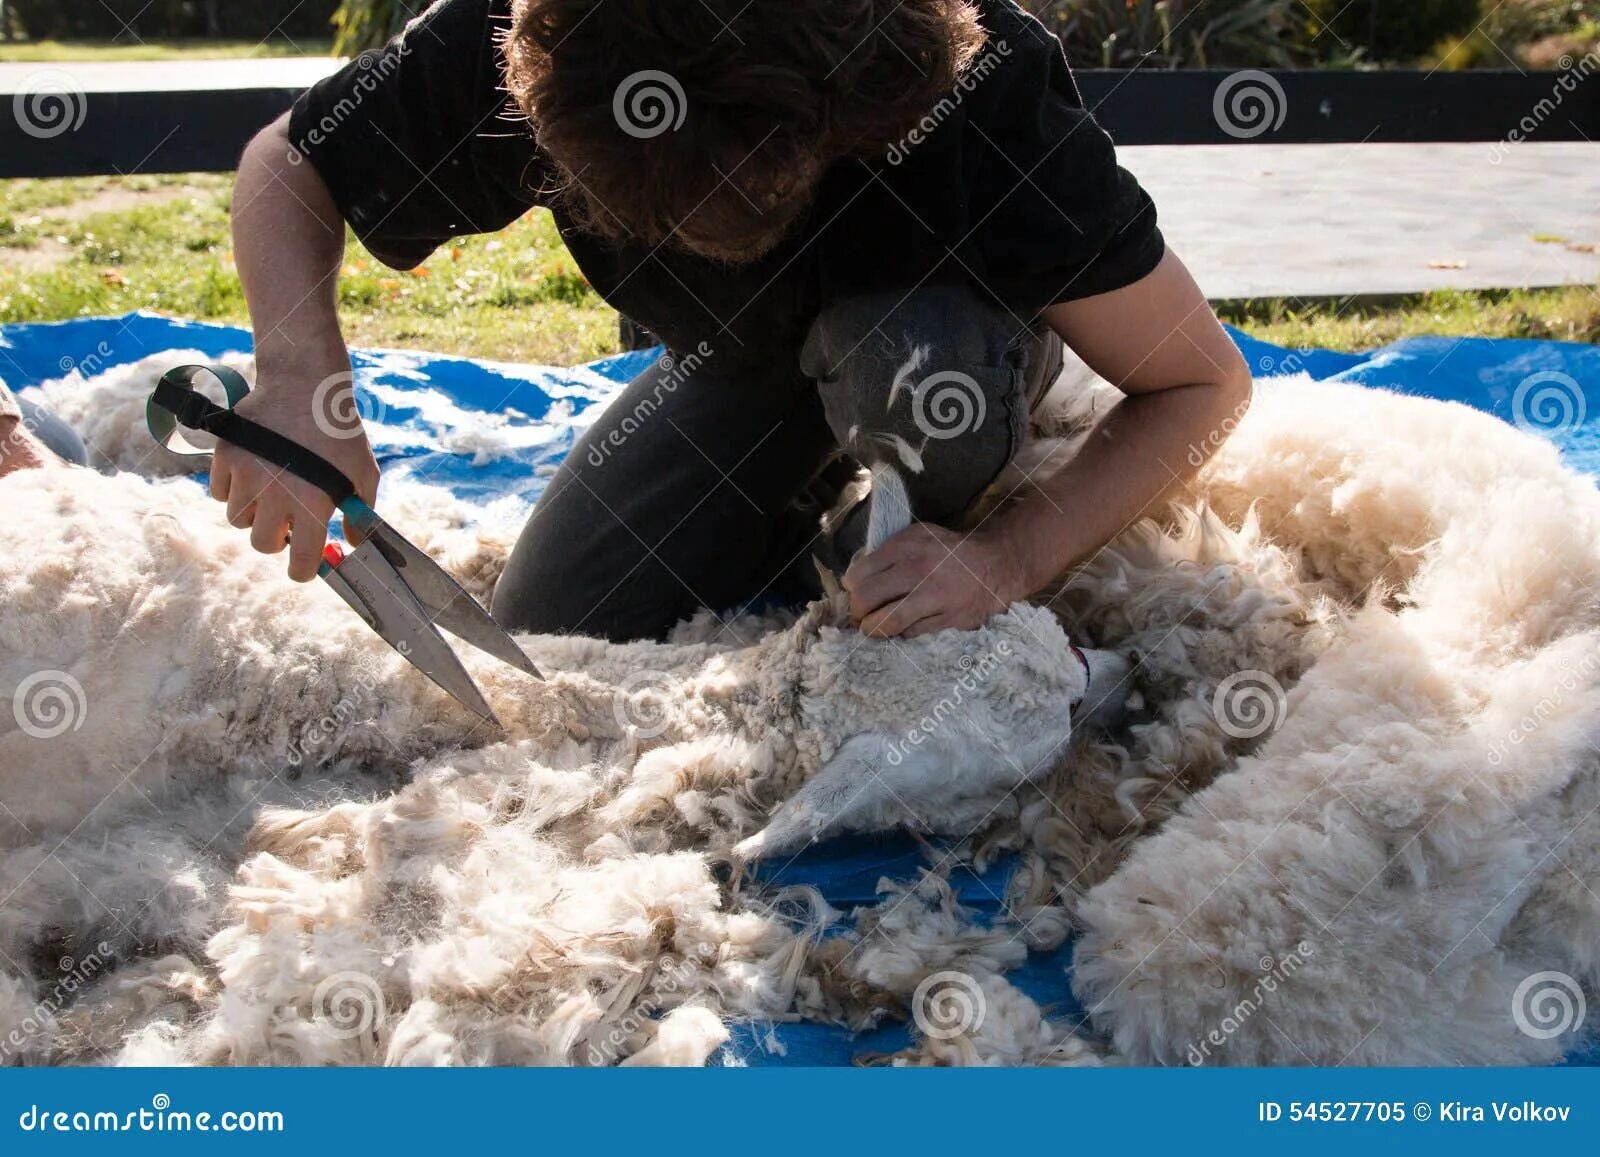 На какой праздник режут барана. Стрижка овцы для добычи шерсти. Машинка для стрижки овец. Шерсть от стрижки овцы до изделия. Ножницы для стрижки овец.